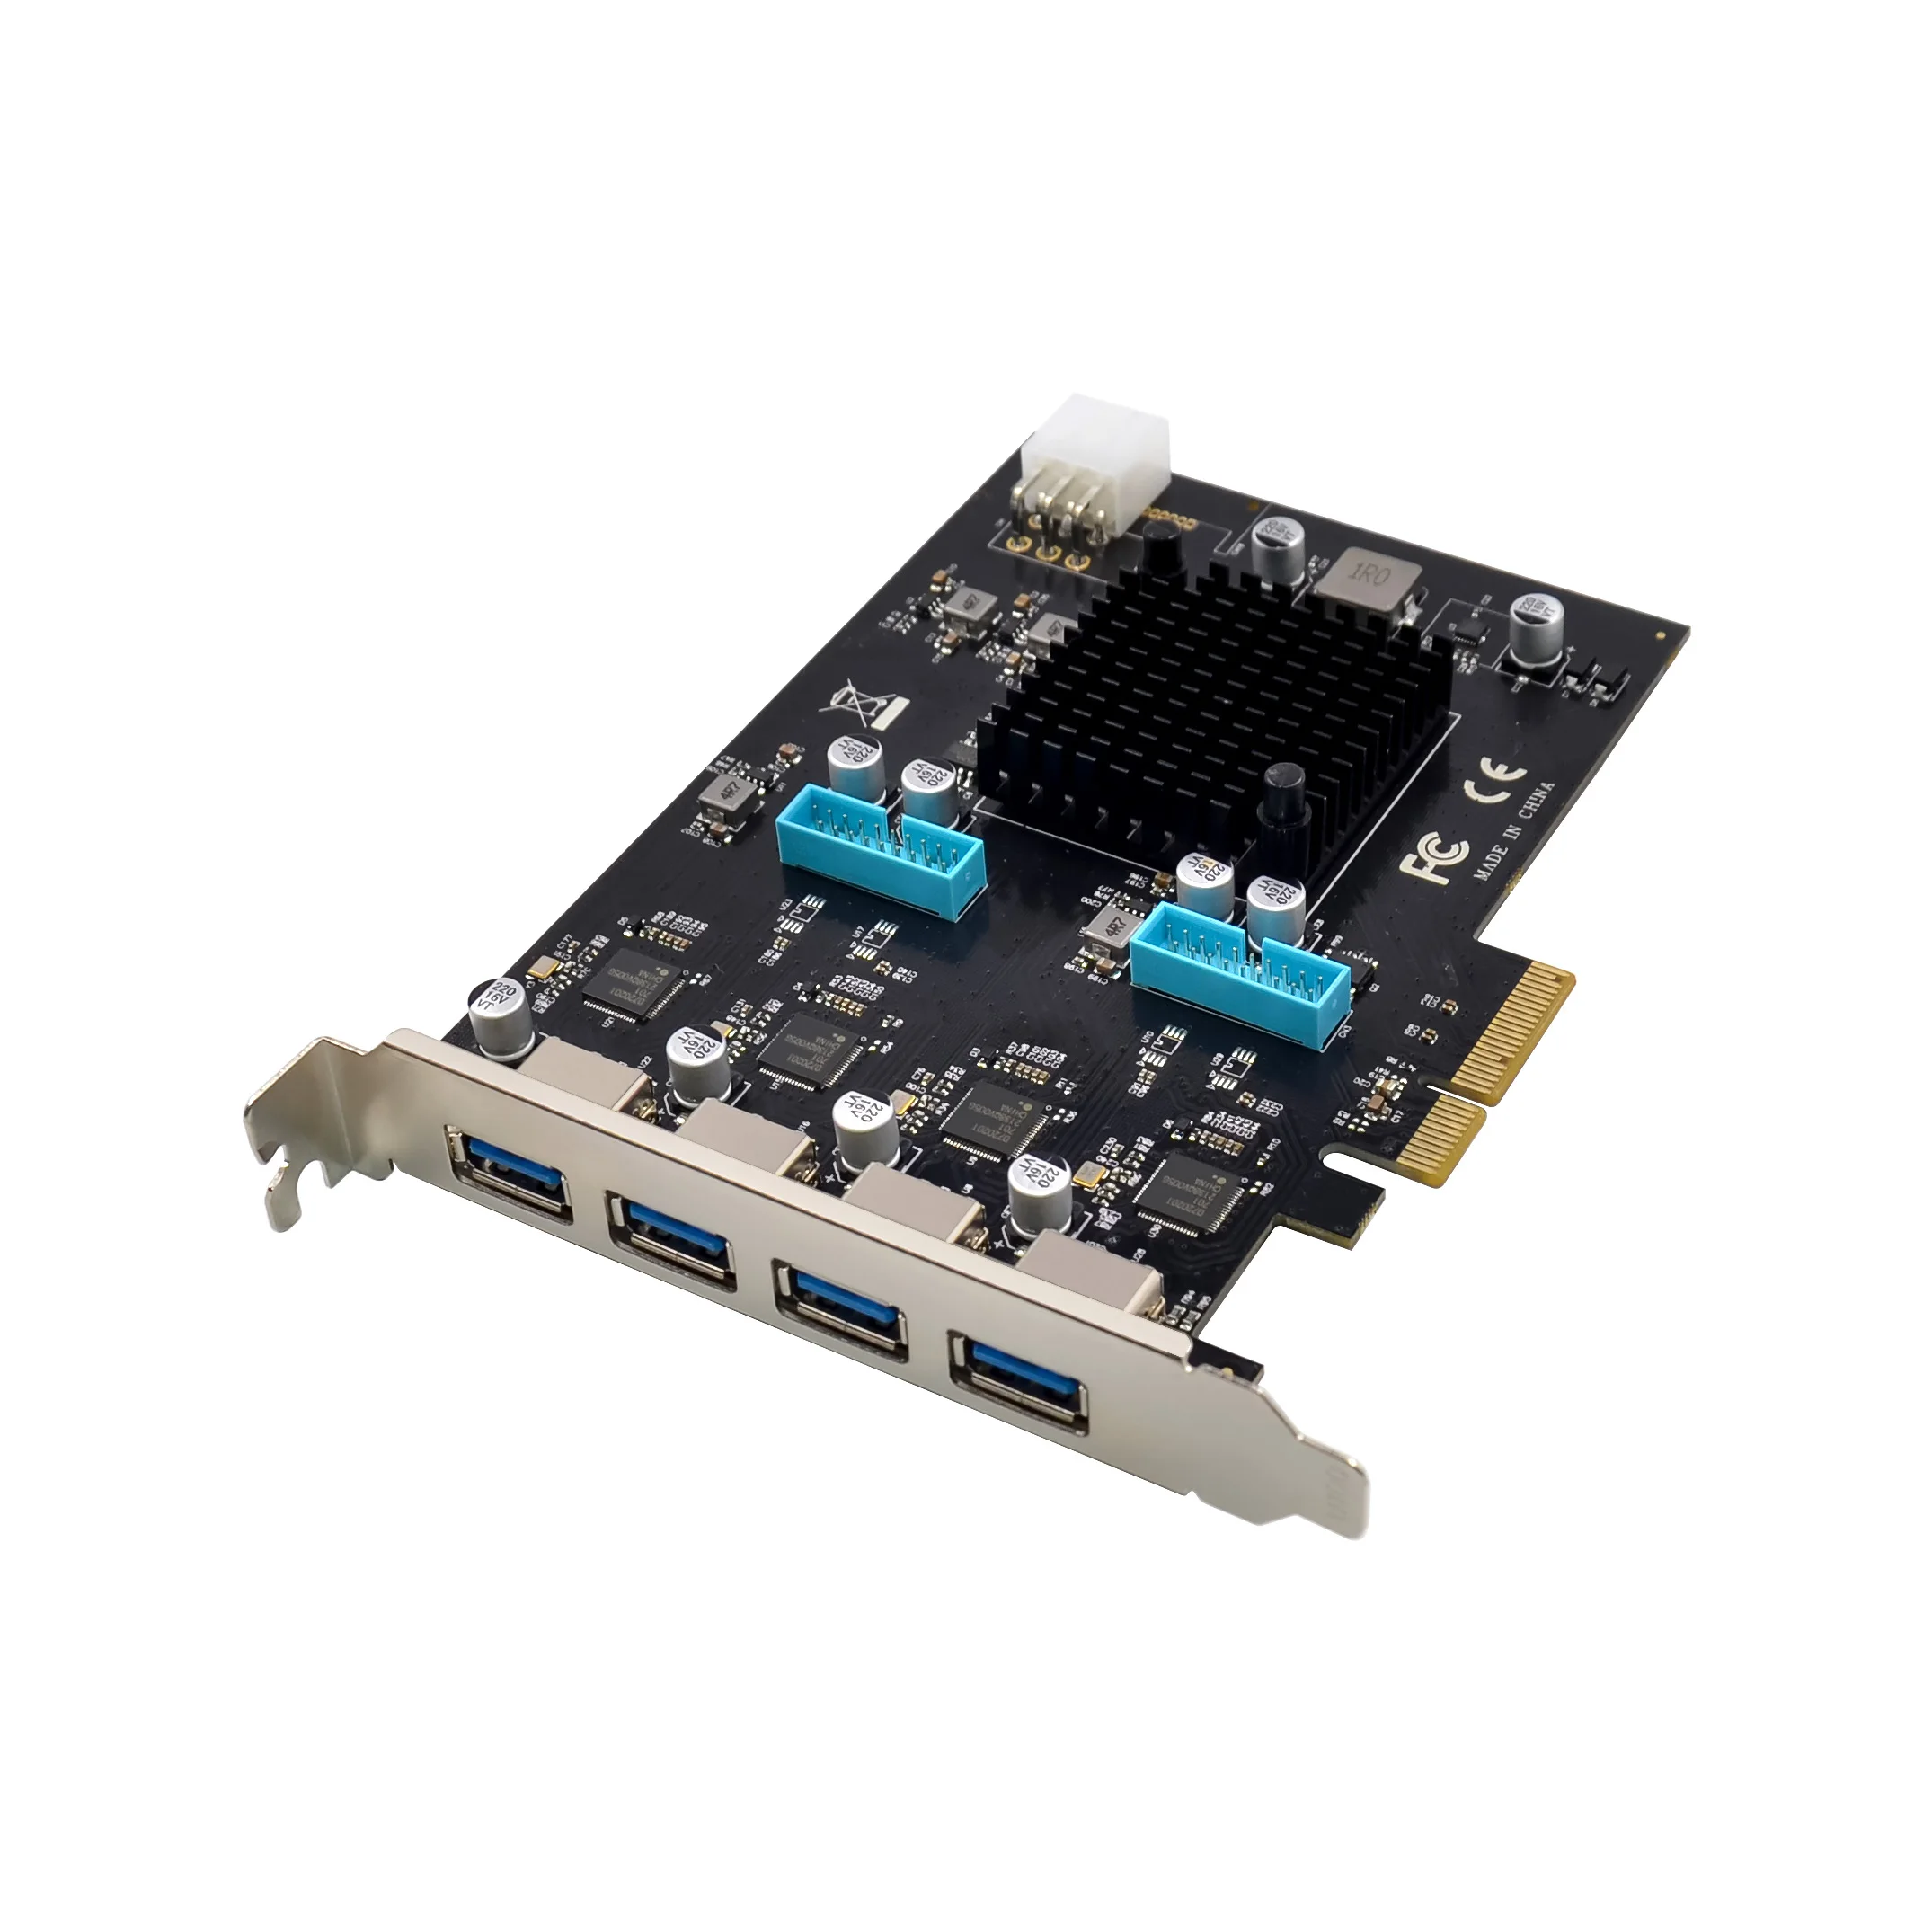 Прямая продажа с фабрики PCI E X4 Gen2 встроенная карта внешняя карта 20 г/локон PCIe 4CH 8 Порт USB 3,0 Плата расширения (1600597006151)